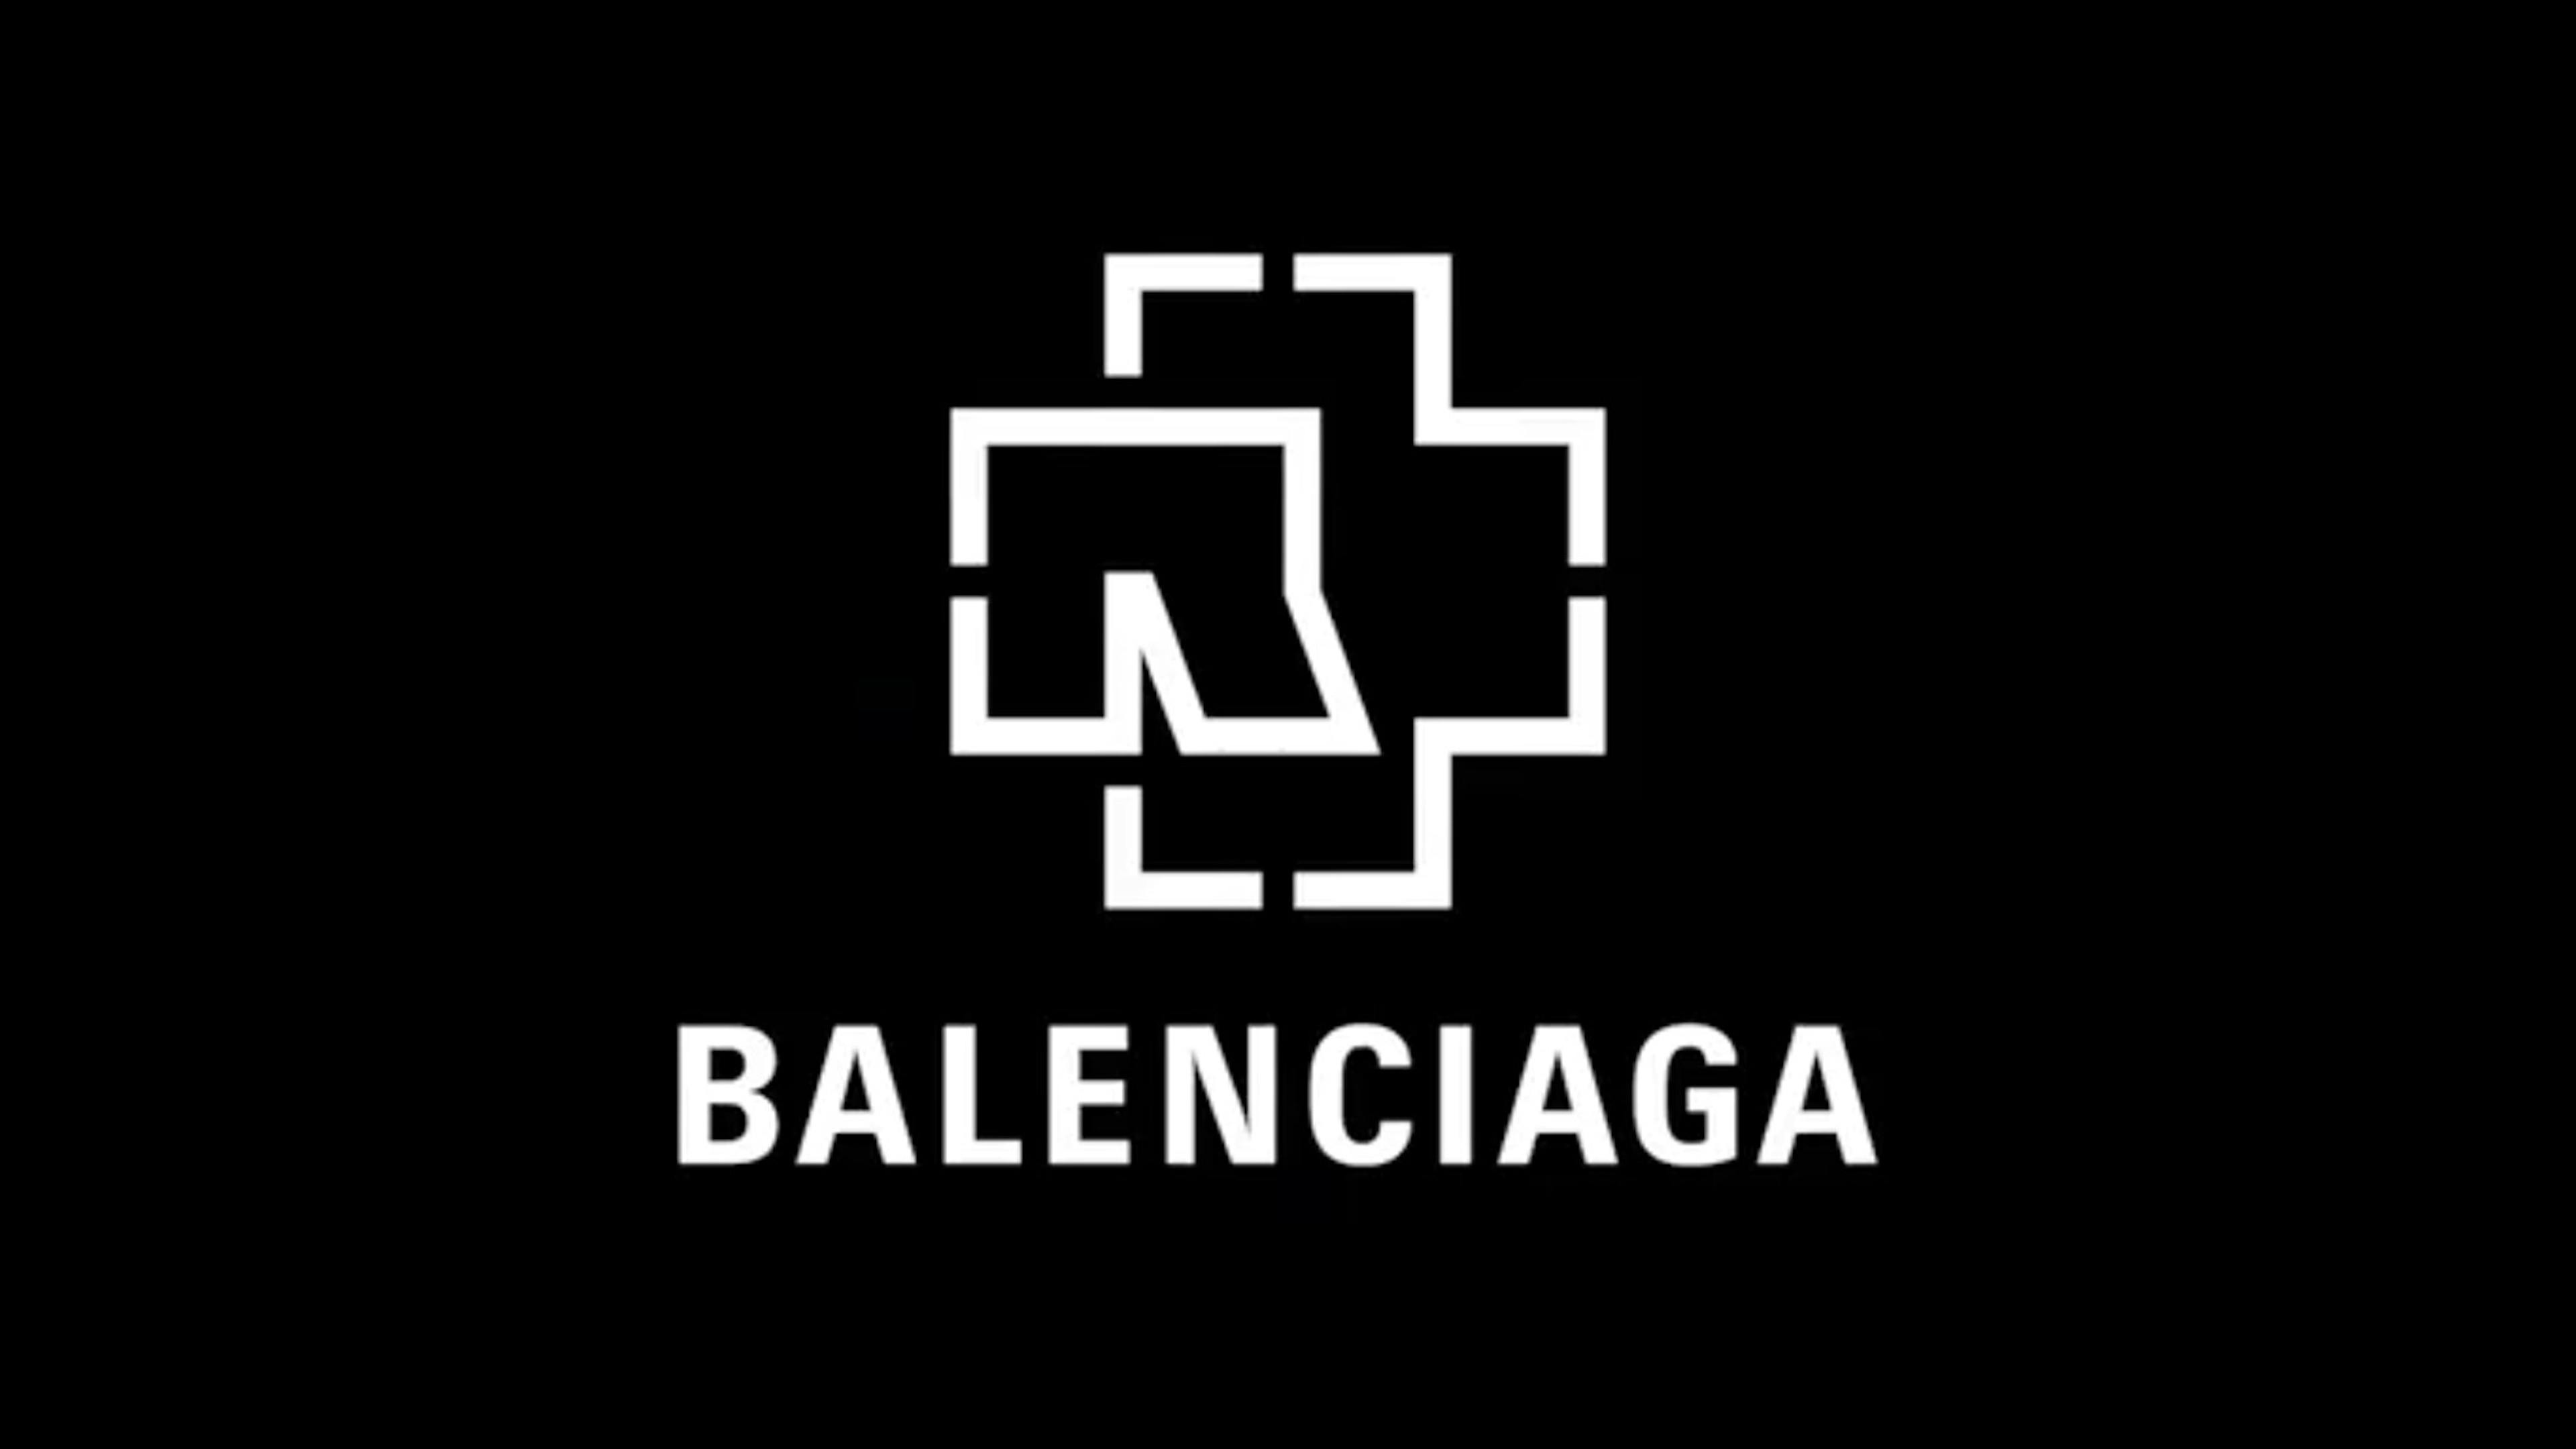 RAMMSTEIN: Balenciaga x Rammstein - Bandmerchandise vom High Fashion-Label, Empfehlung, News